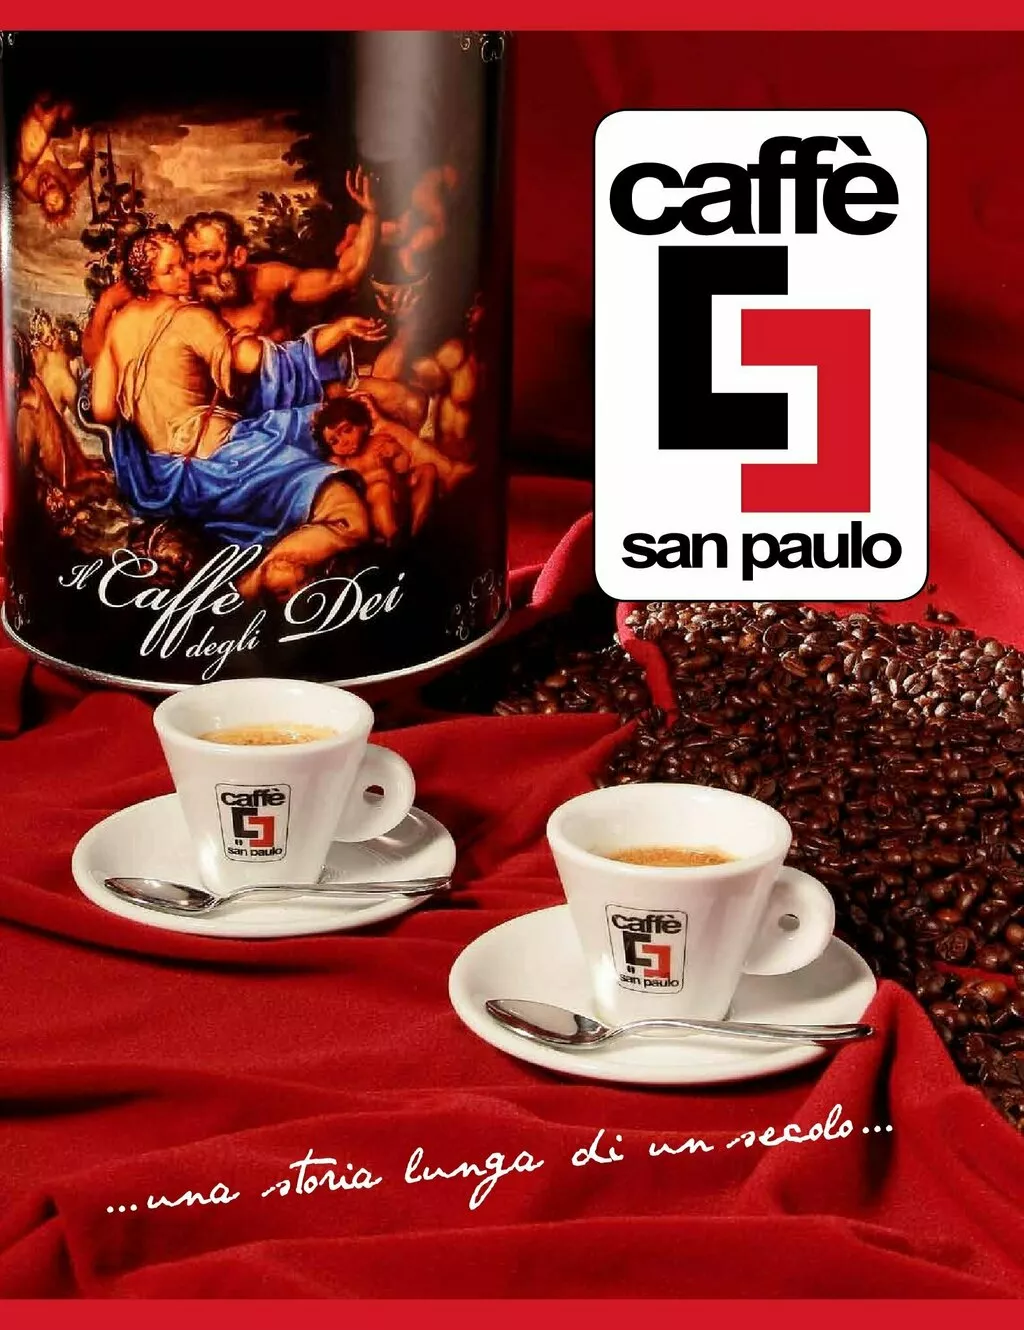 кофе сaffe san paulo на условиях exw в Италии 10